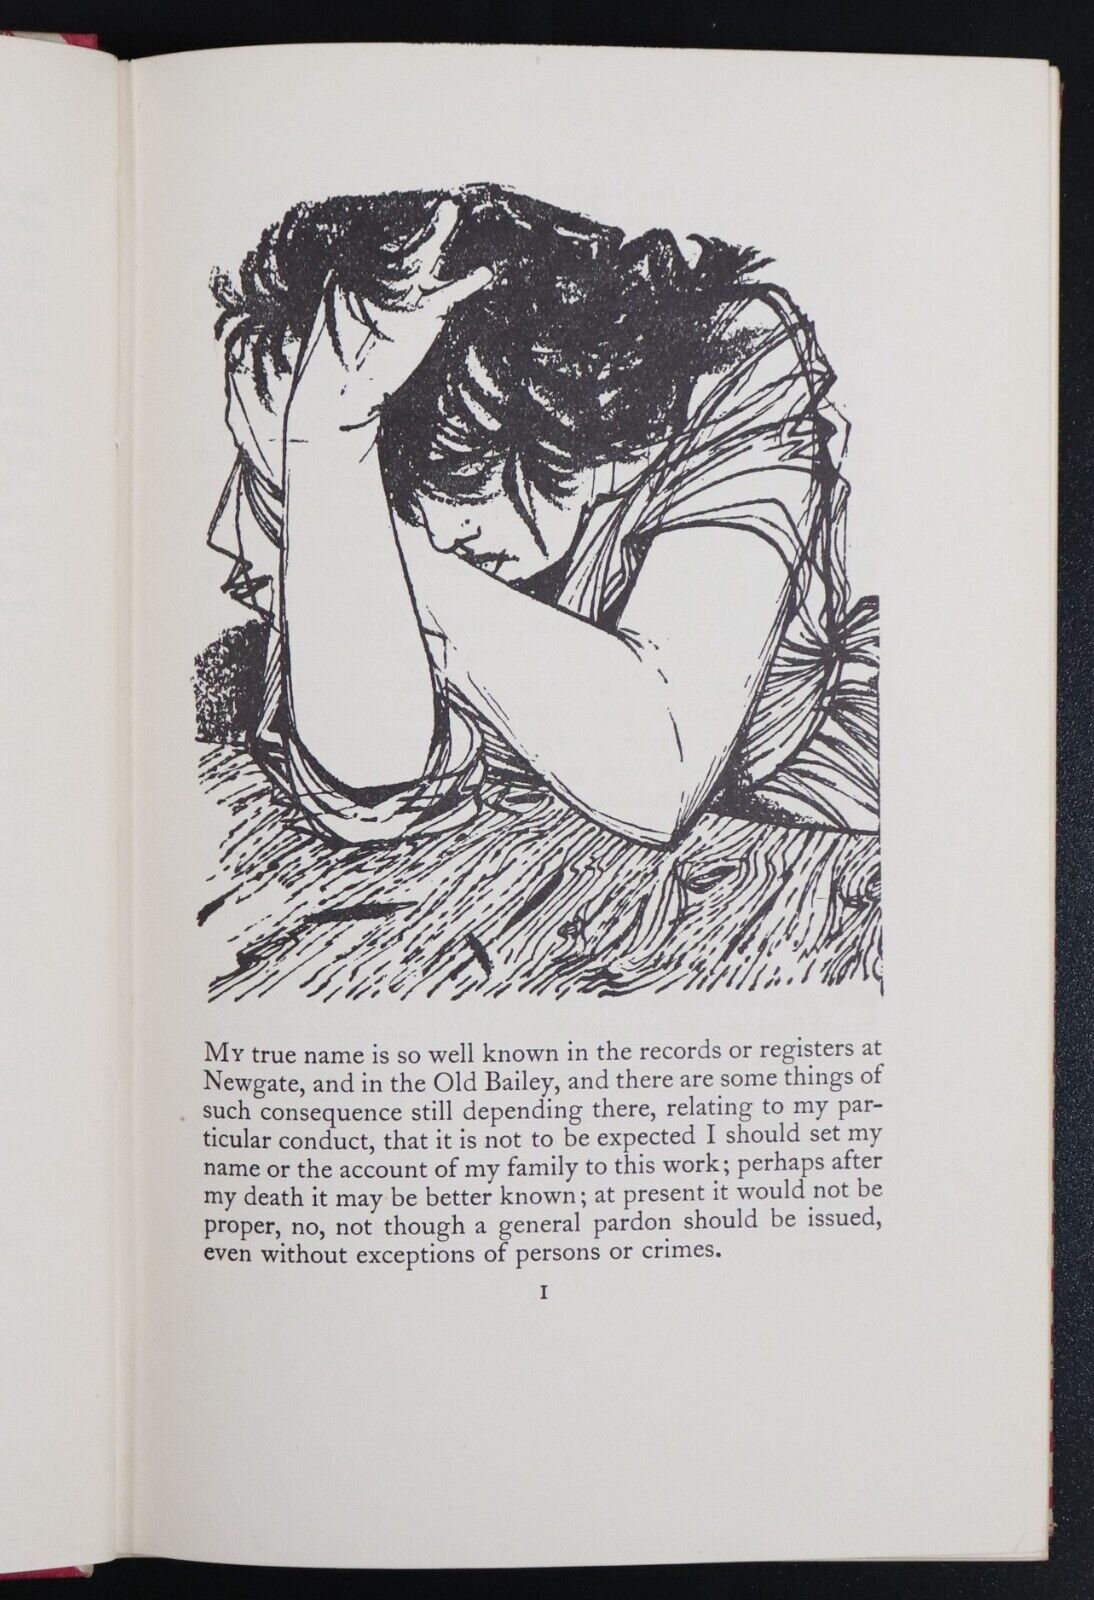 1954 Moll Flanders by Daniel Defoe Folio Society Classic Fiction Book